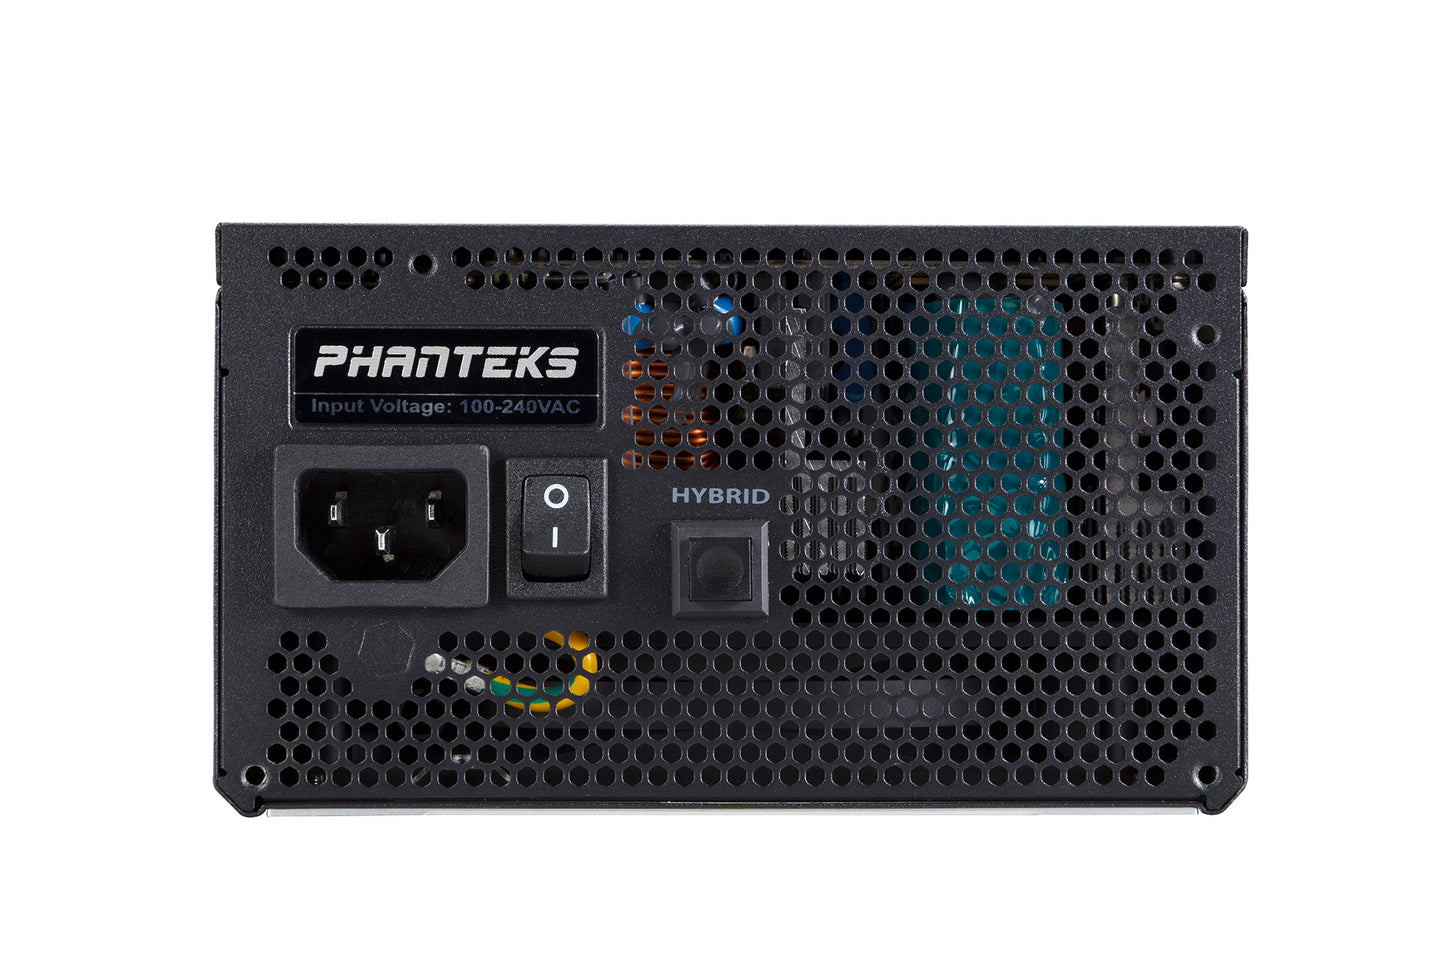 Phanteks 80+ Gold - Built-in Power Splitter 1000W Fully Modular Design Dual System Support Power Supply (PH-P1000GC)